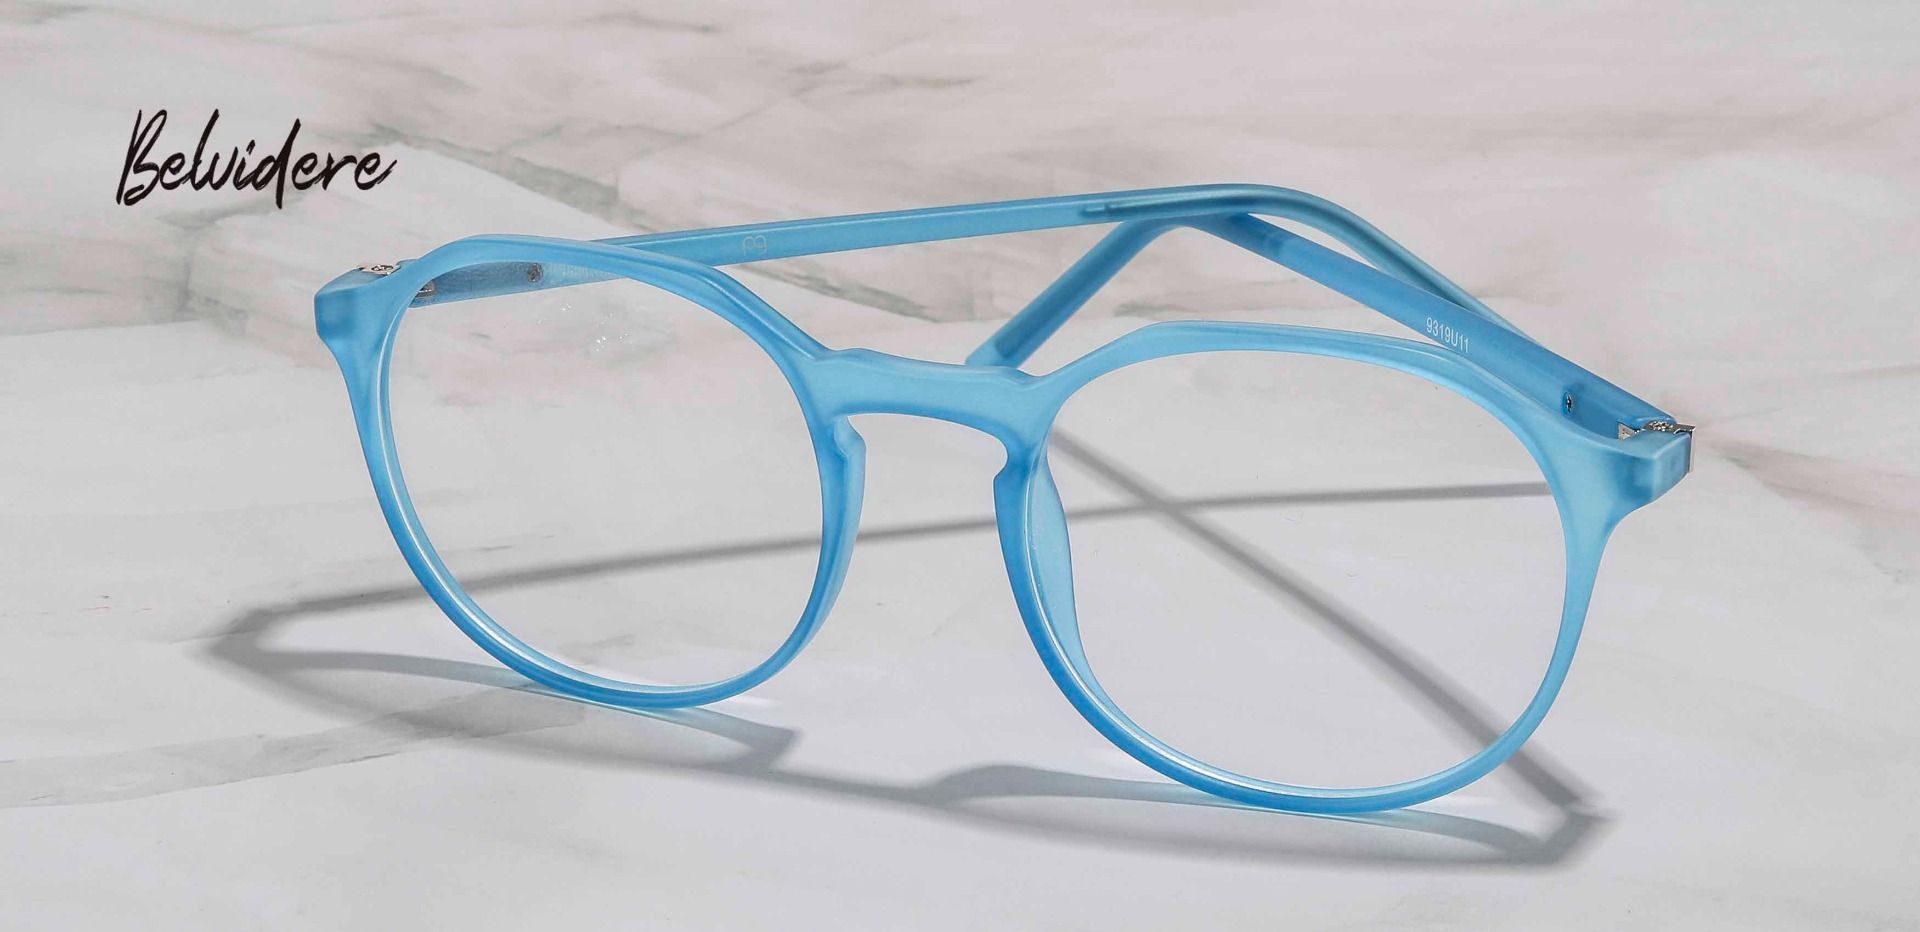 Belvidere Geometric Prescription Glasses - Blue